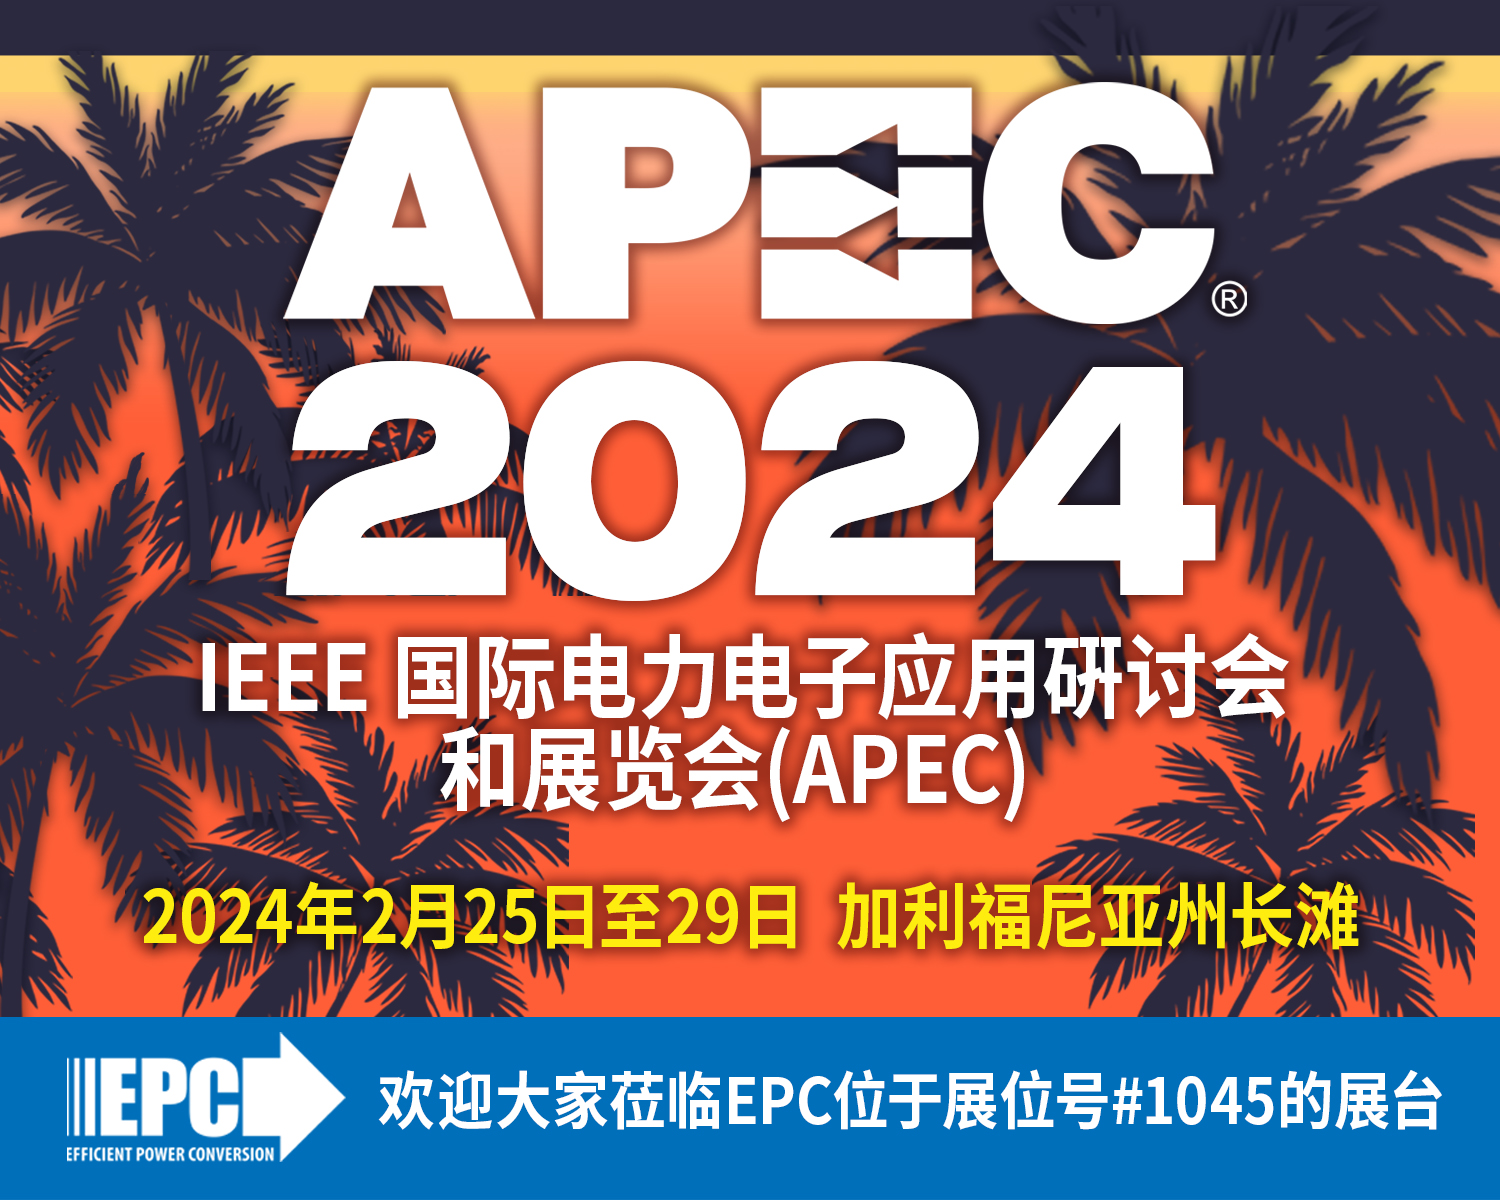 APEC 2024 PR Graphic_CN.jpg